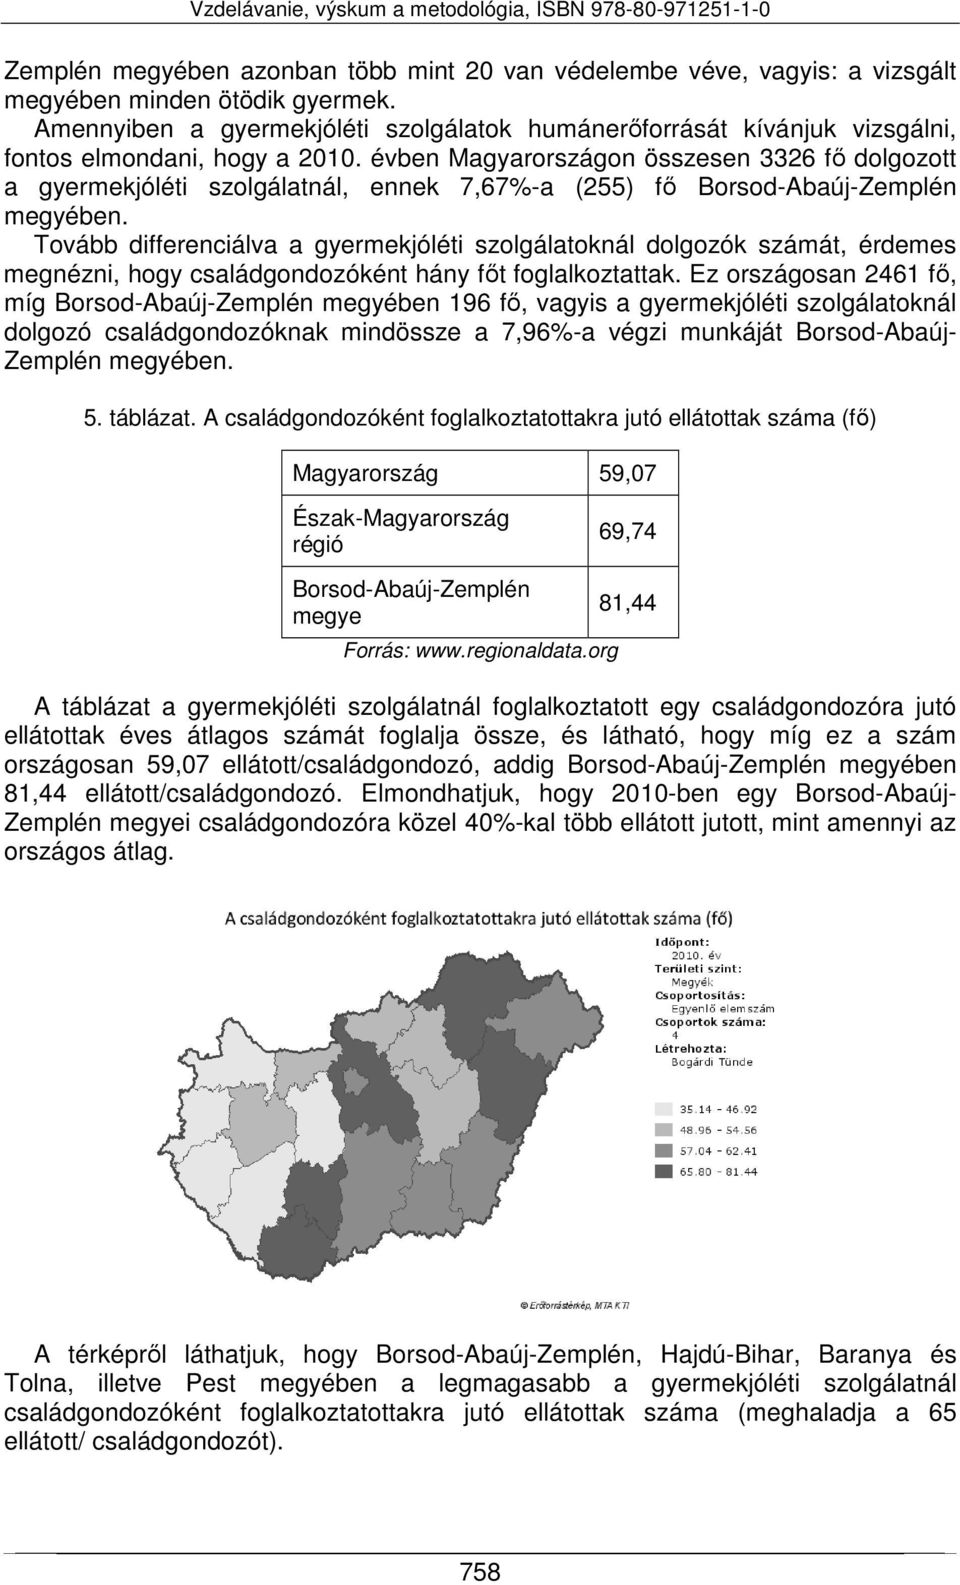 évben Magyarországon összesen 3326 fő dolgozott a gyermekjóléti szolgálatnál, ennek 7,67%-a (255) fő Borsod-Abaúj-Zemplén megyében.